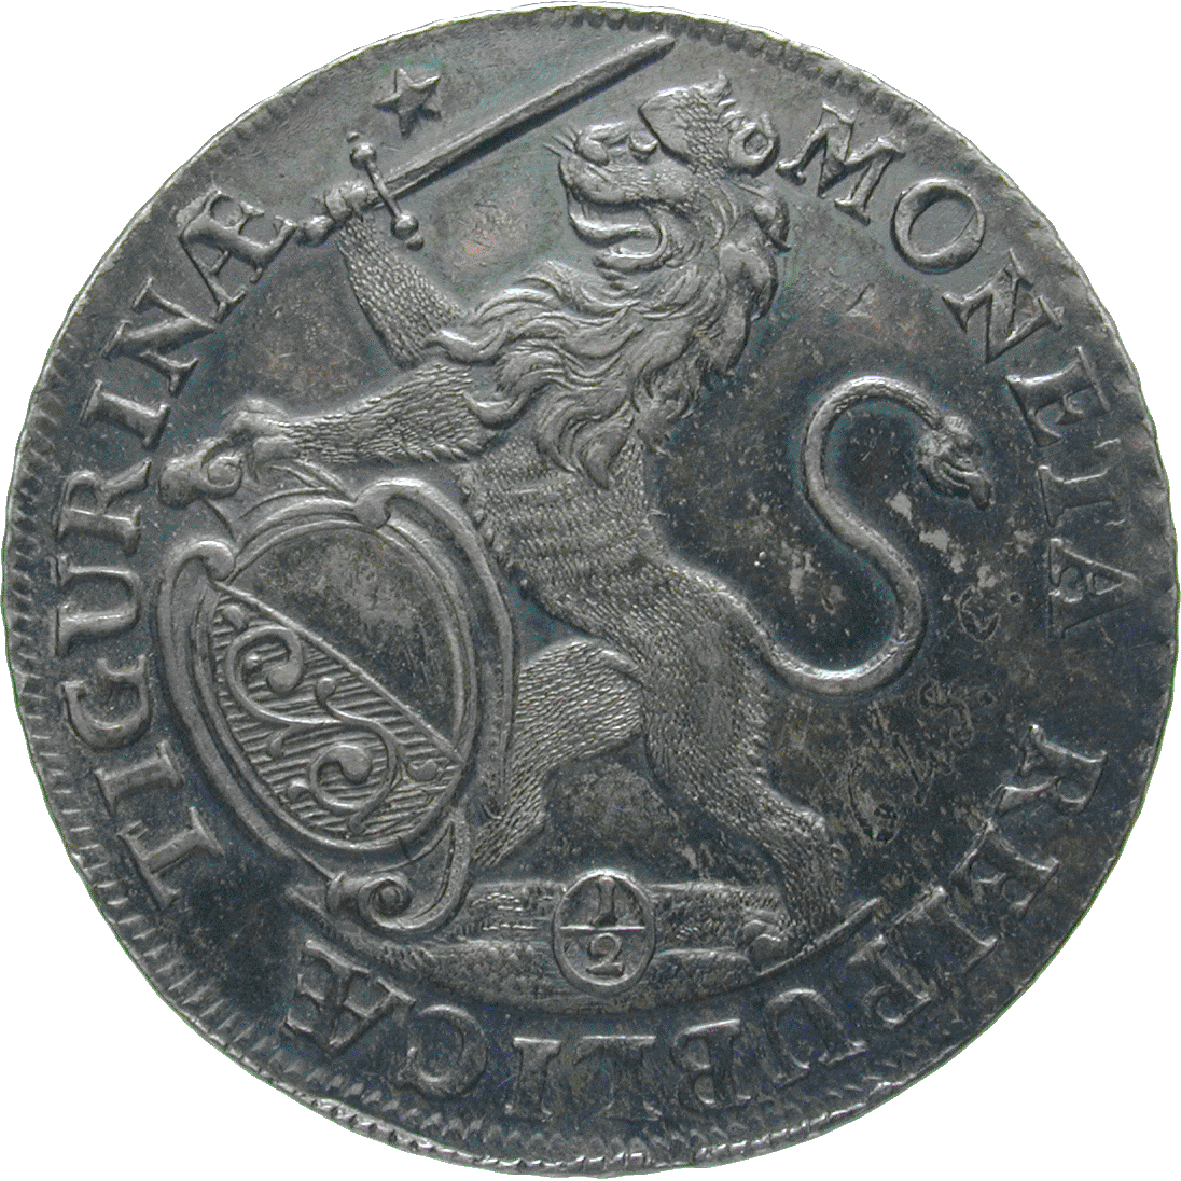 Republic of Zurich, 1/2 Taler 1739 (obverse)